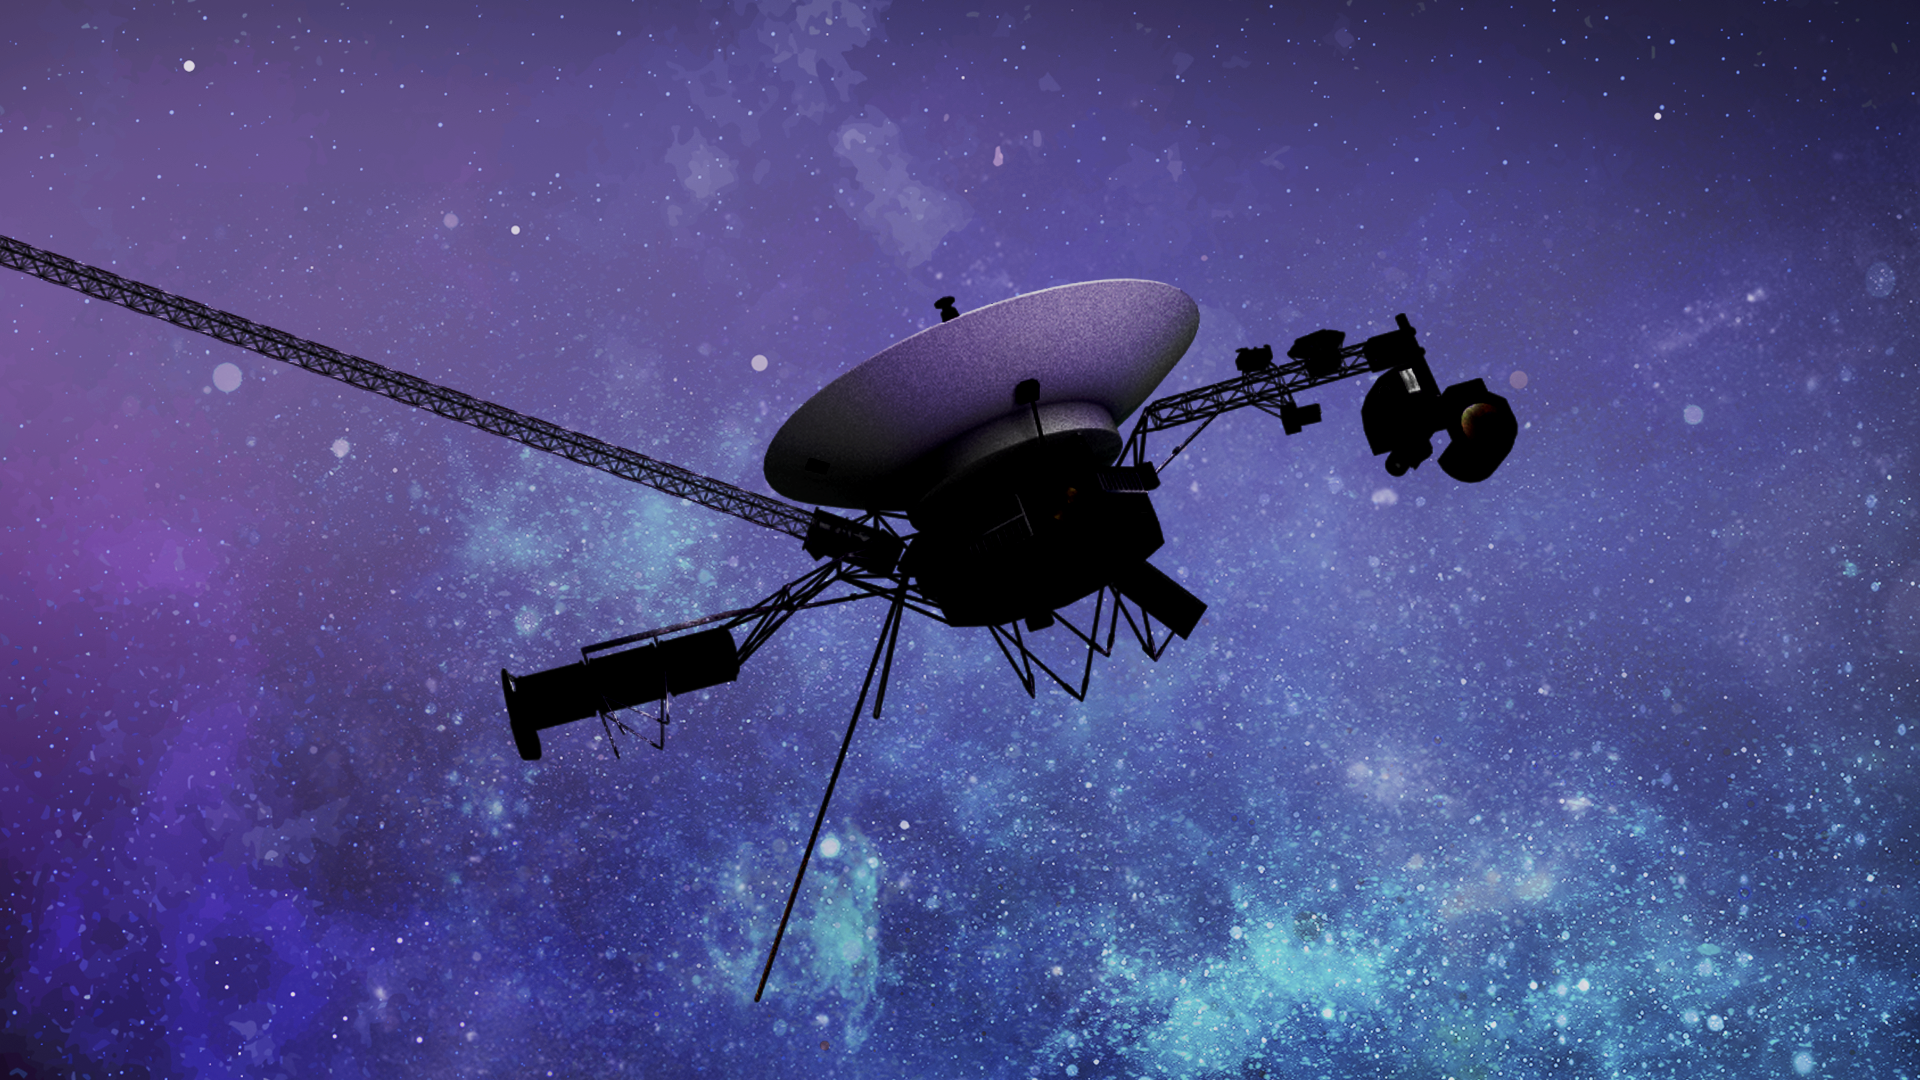 La NASA descifra una señal del Voyager 1 luego de un tiempo sin datos de la sonda